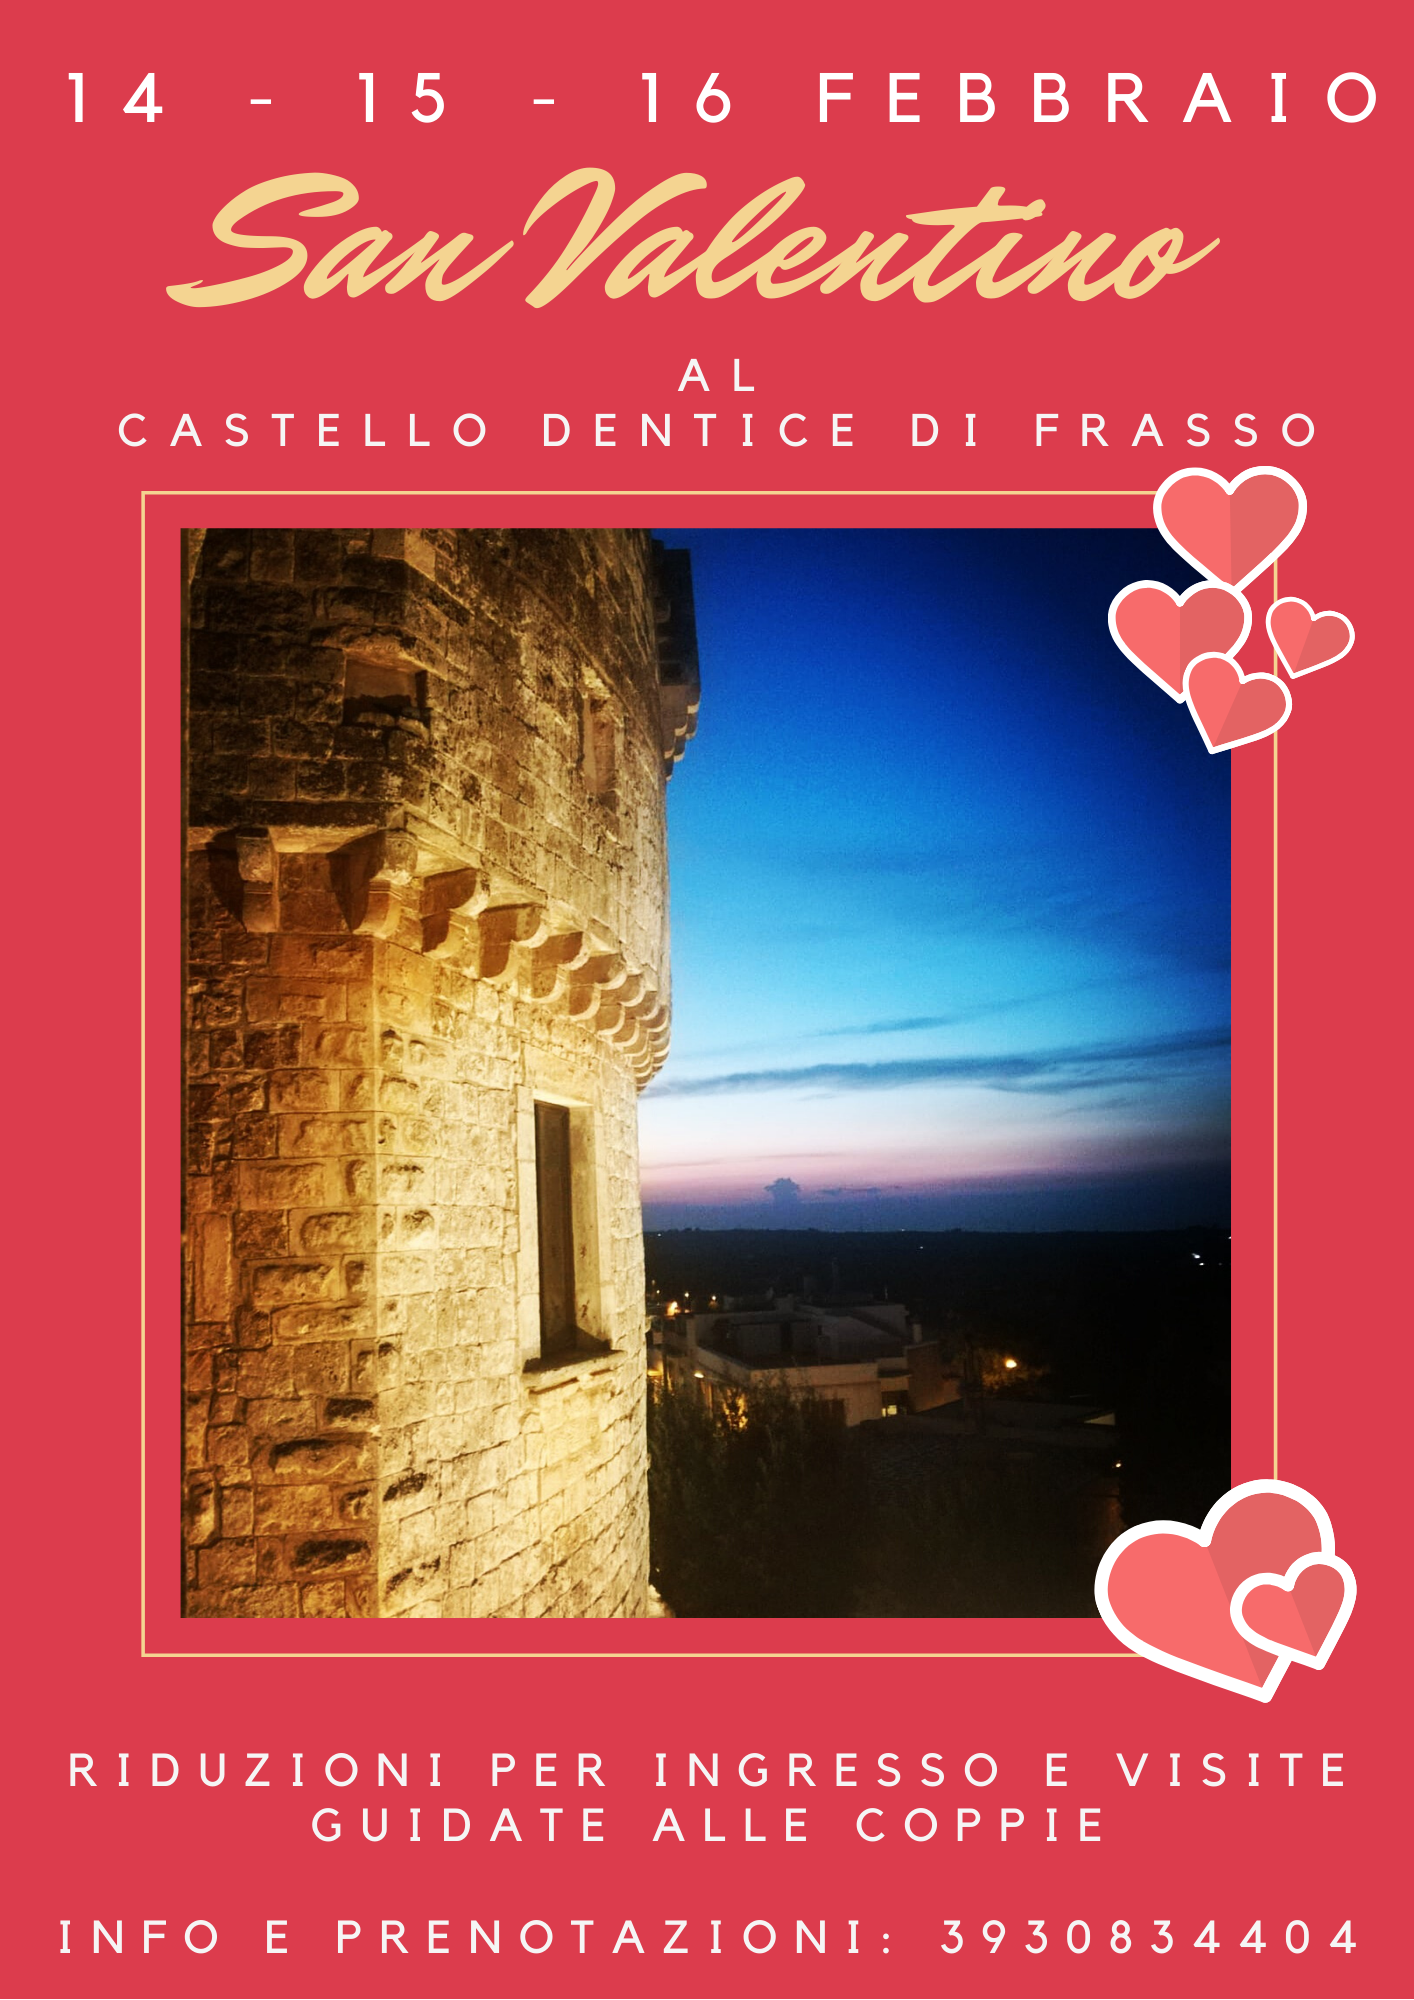 San Valentino al castello Dentice di Frasso: riduzioni e visite a tema